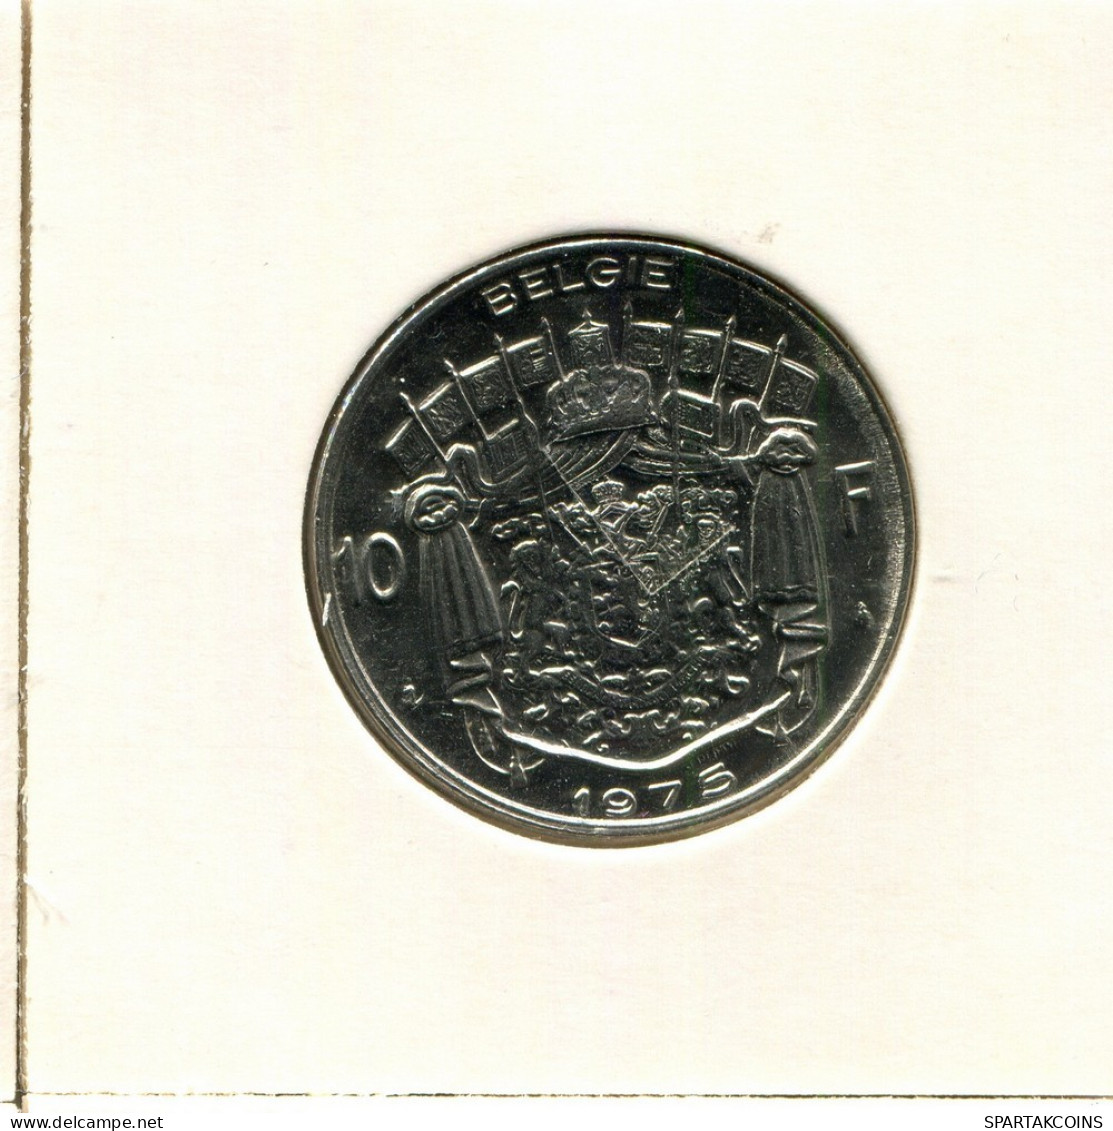 10 FRANCS 1975 DUTCH Text BELGIUM Coin #BB240.U.A - 10 Francs